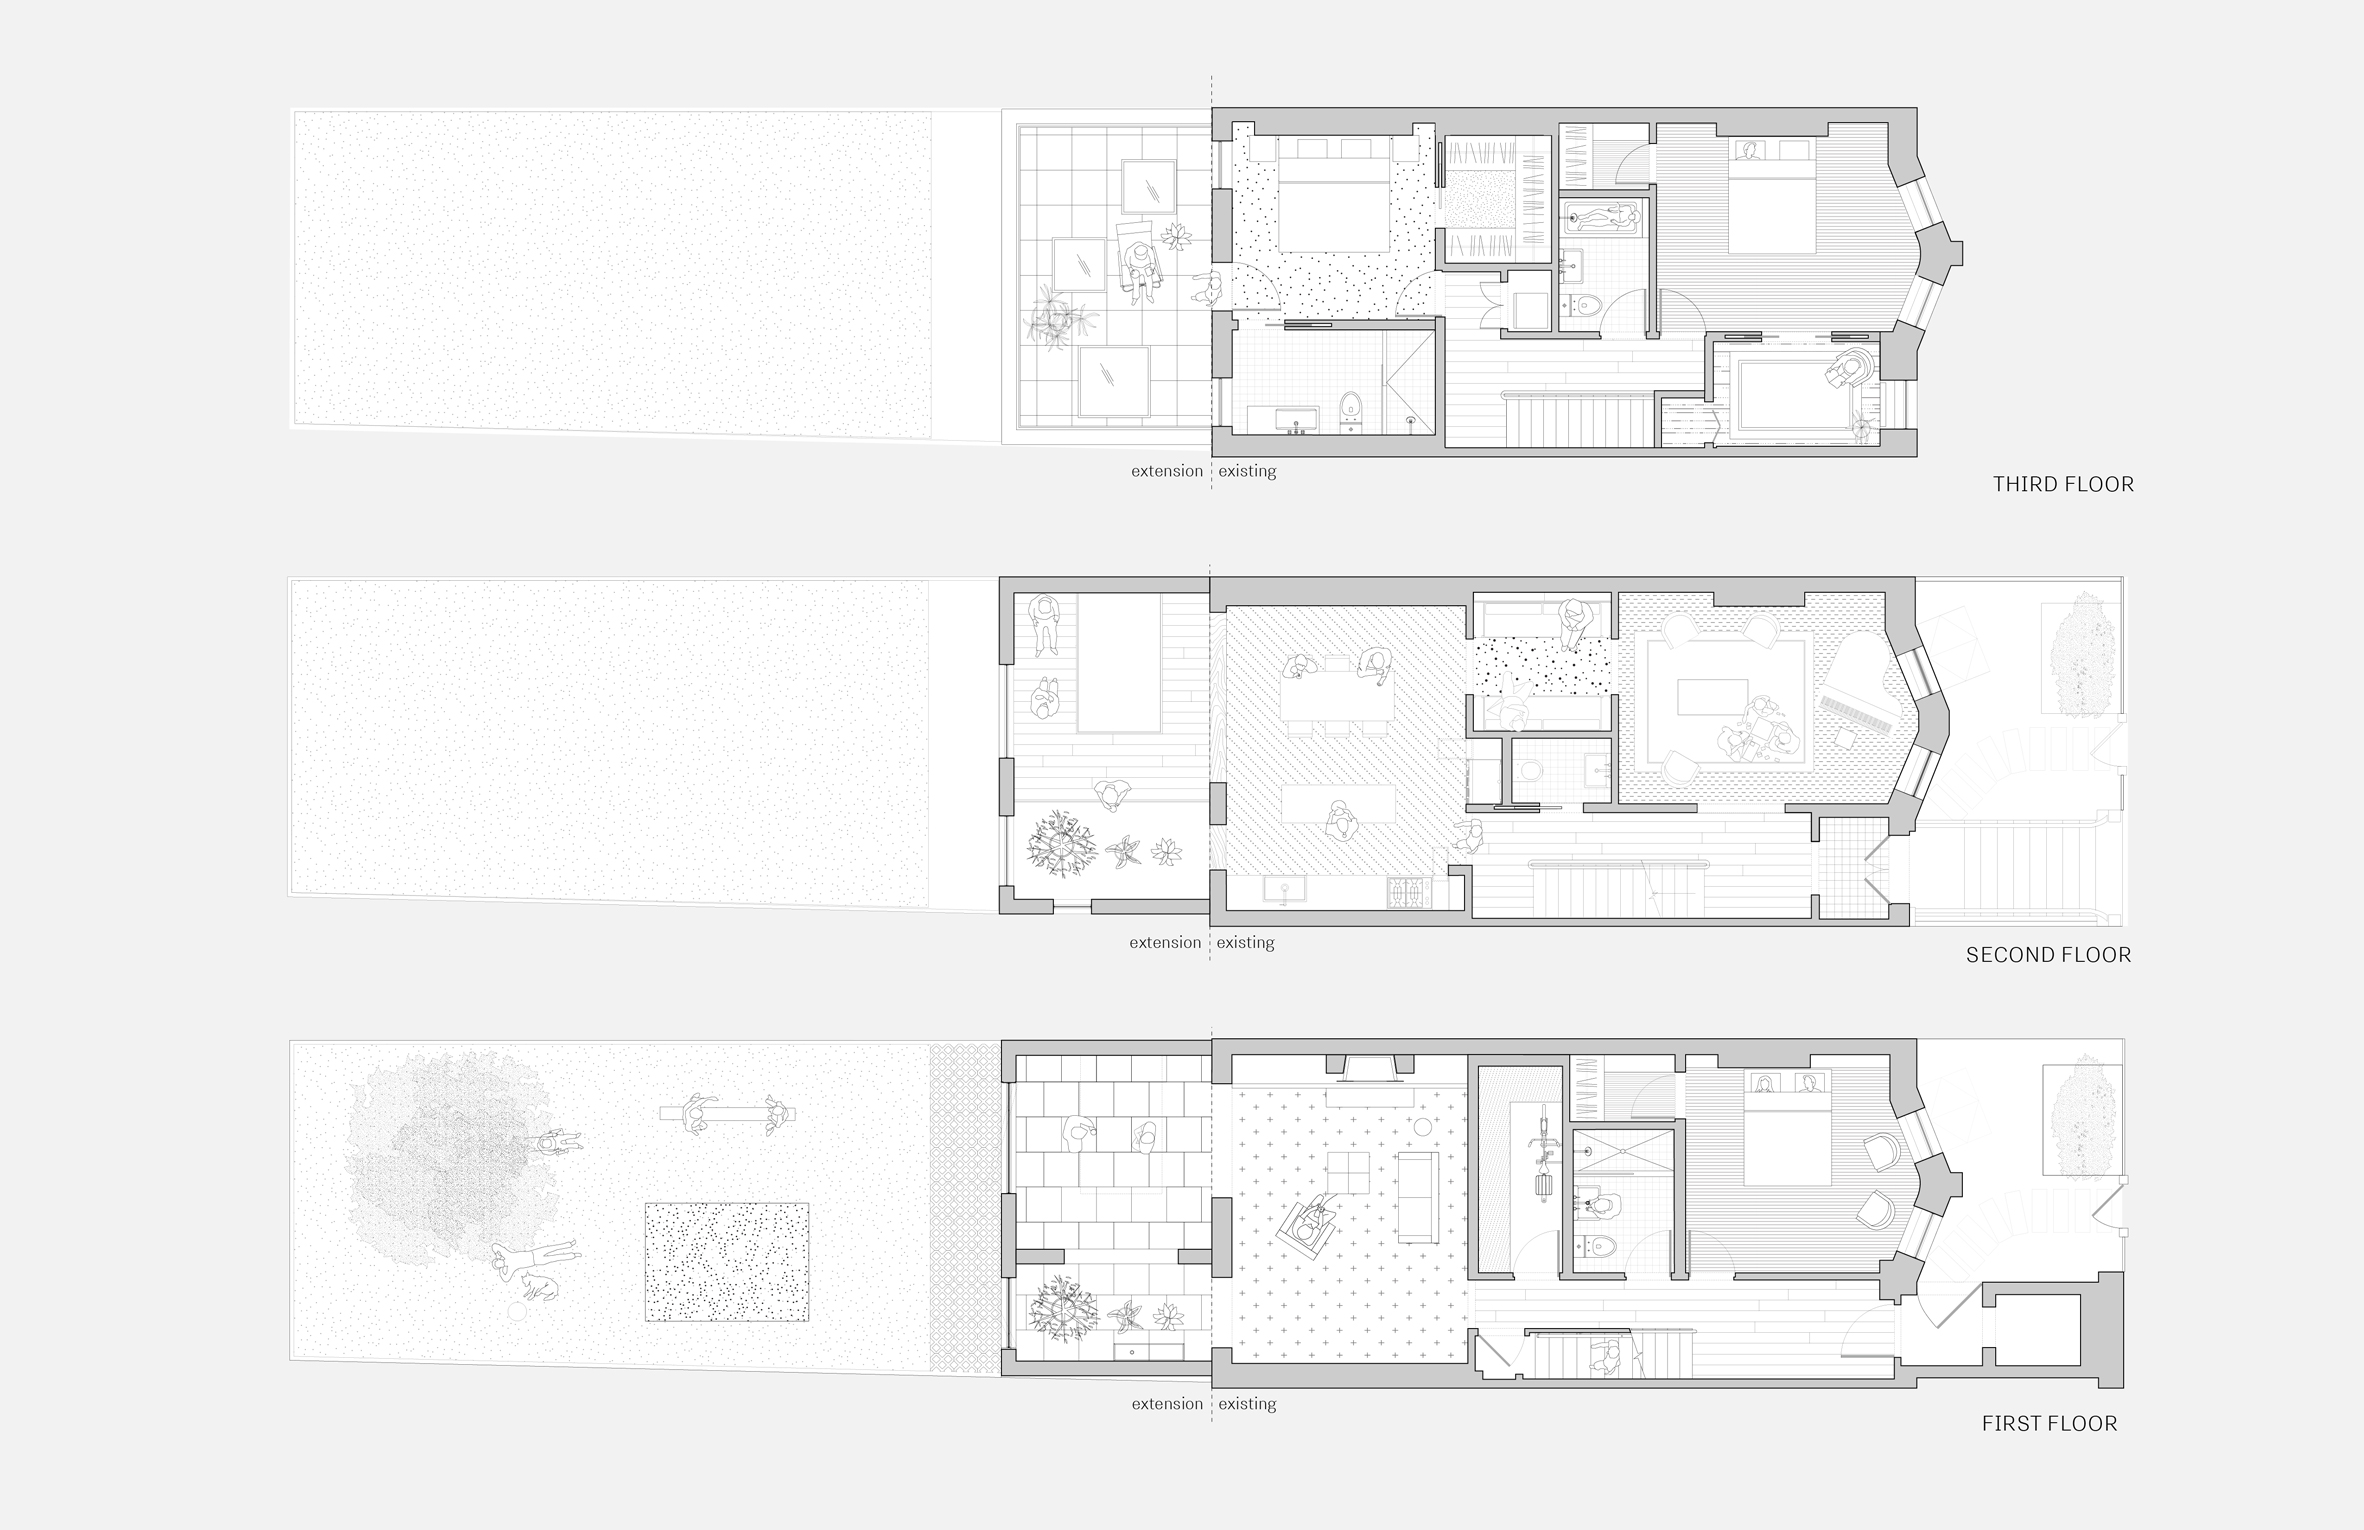 extended townhouse vondalwig architecture brooklyn new york dezeen floor plans - NGÔI NHÀ THÔNG THOÁNG VÀ TRÀN NGẬP ÁNH SÁNG TỰ NHIÊN